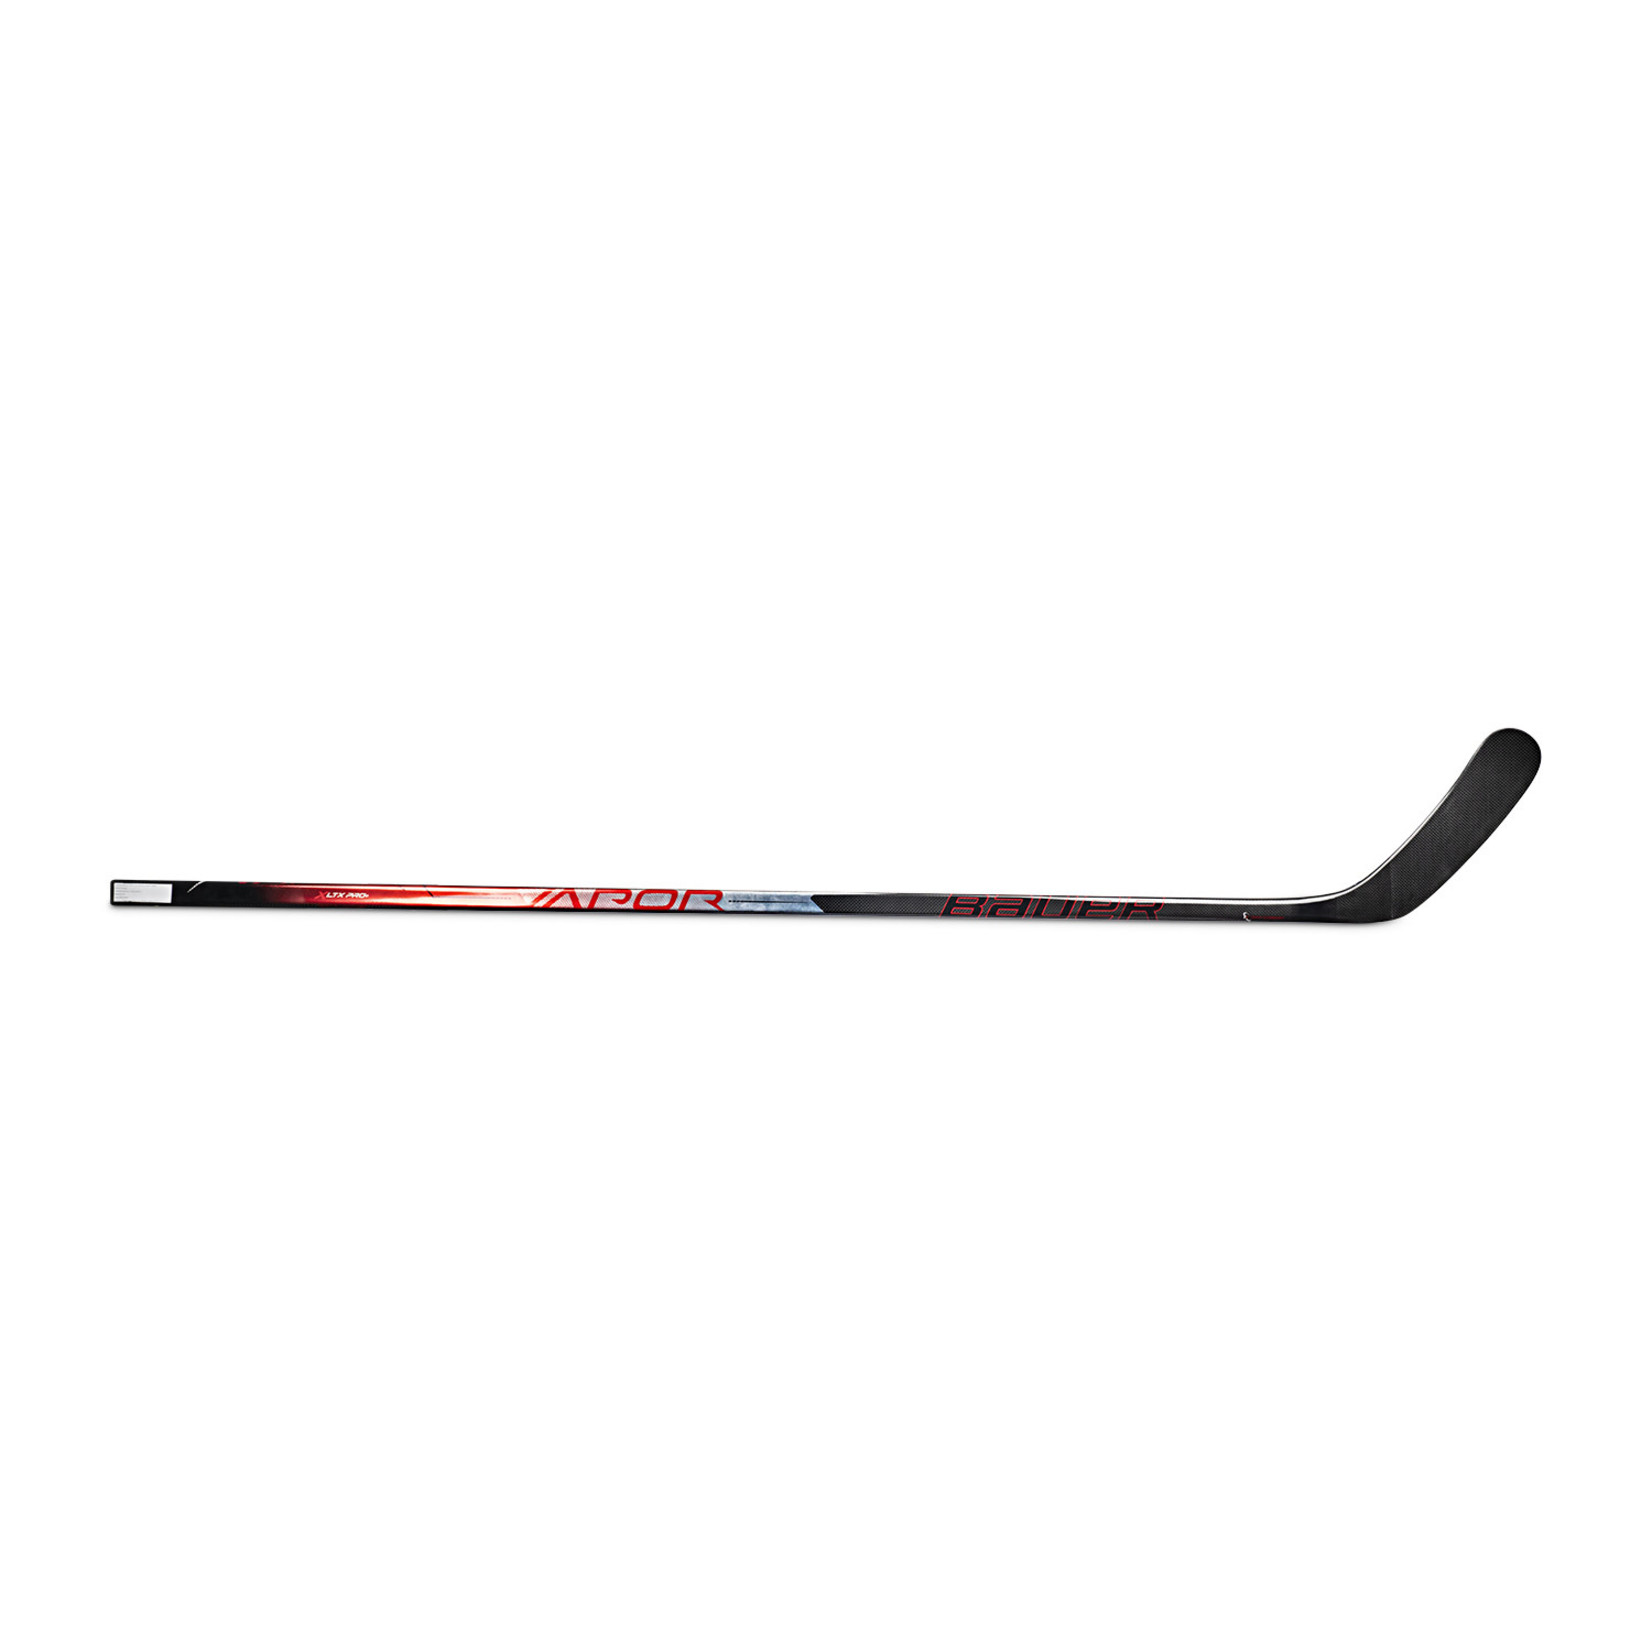 Bauer Bauer Hockey Stick, Vapor LTX Pro+, Grip, Junior